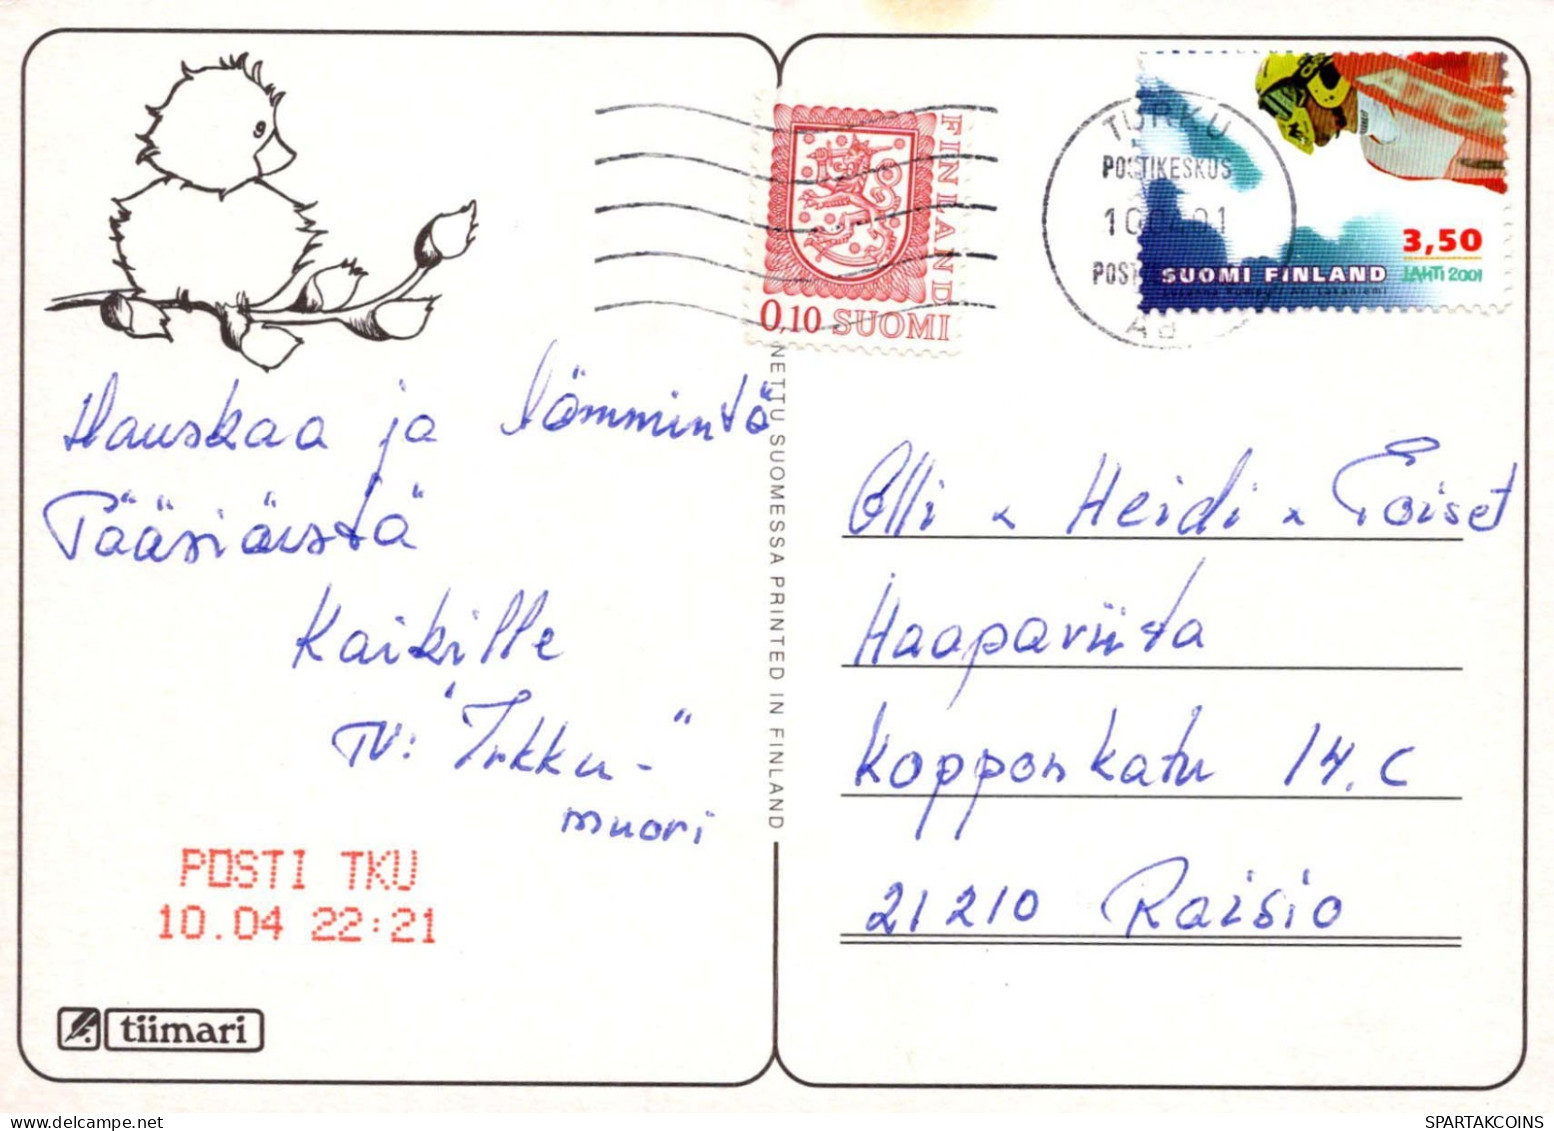 PASQUA POLLO Vintage Cartolina CPSM #PBO983.IT - Pascua